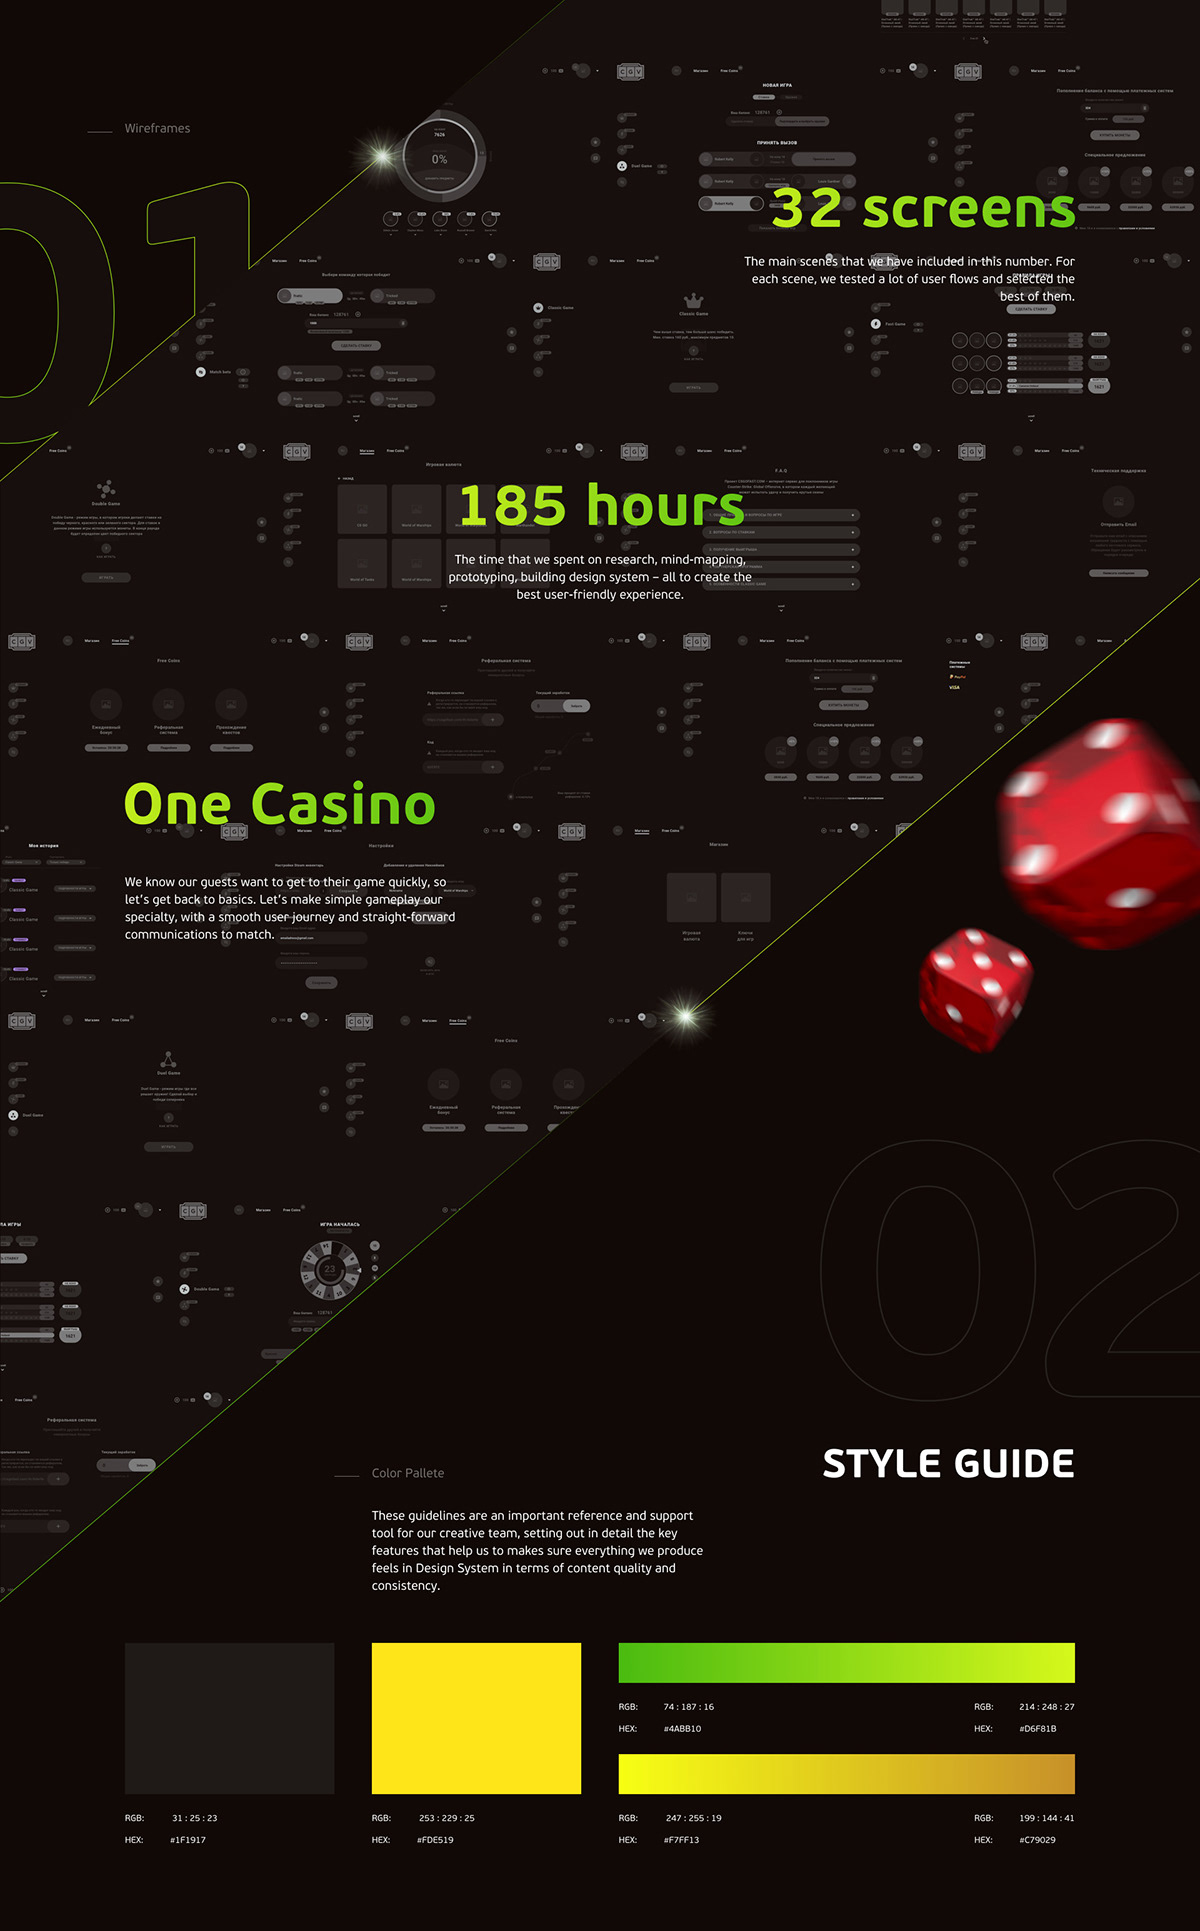 online casino in singapore